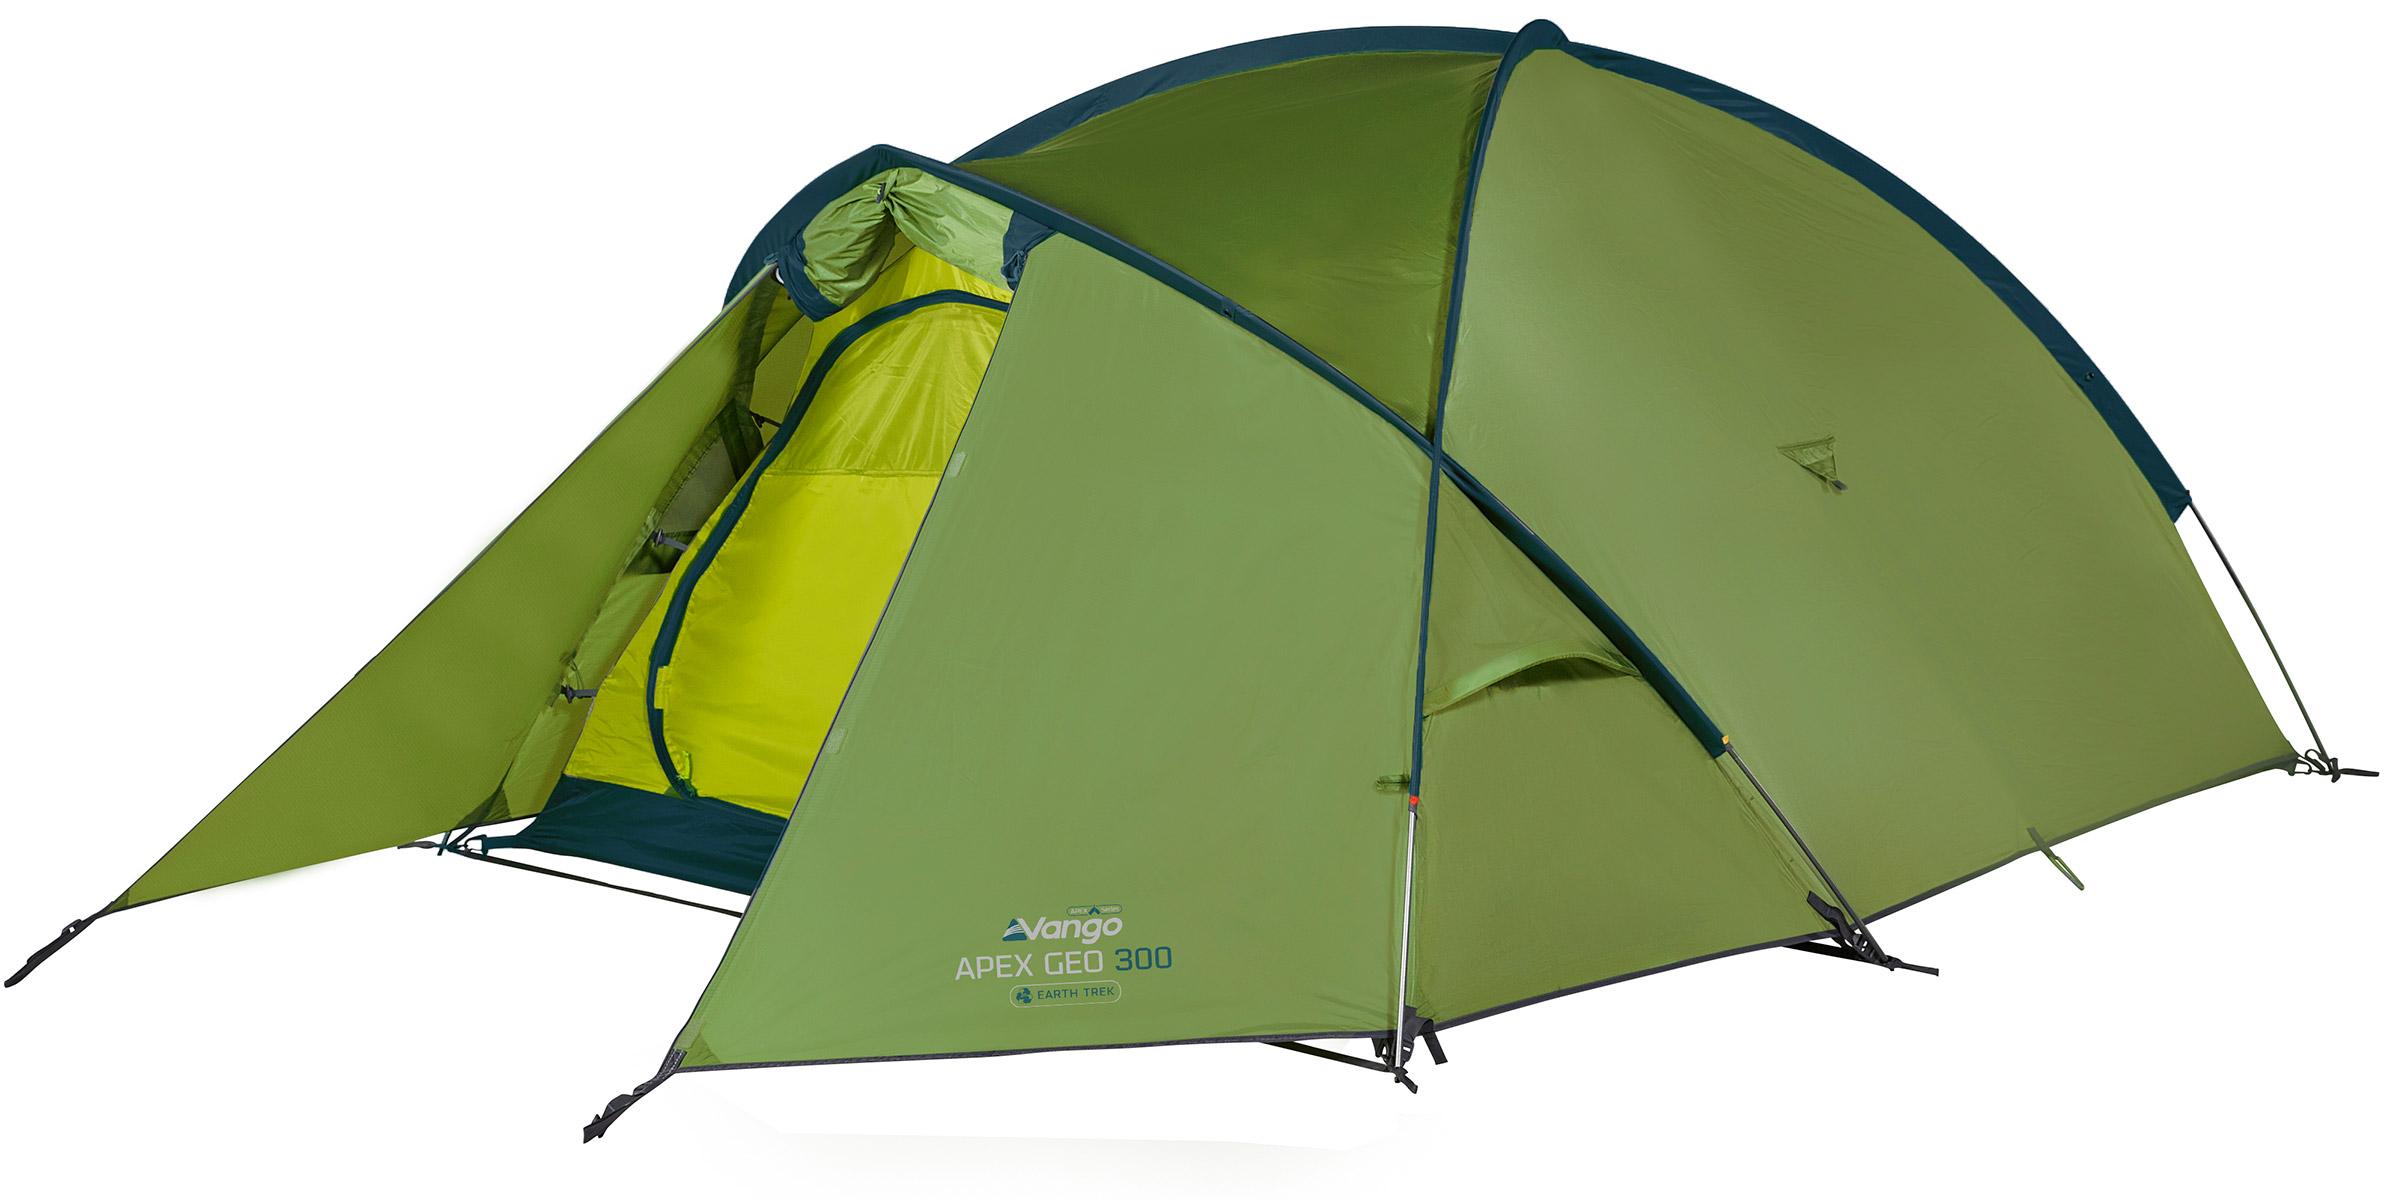 Vango Apex Geo 300 Tent - Pamir Green